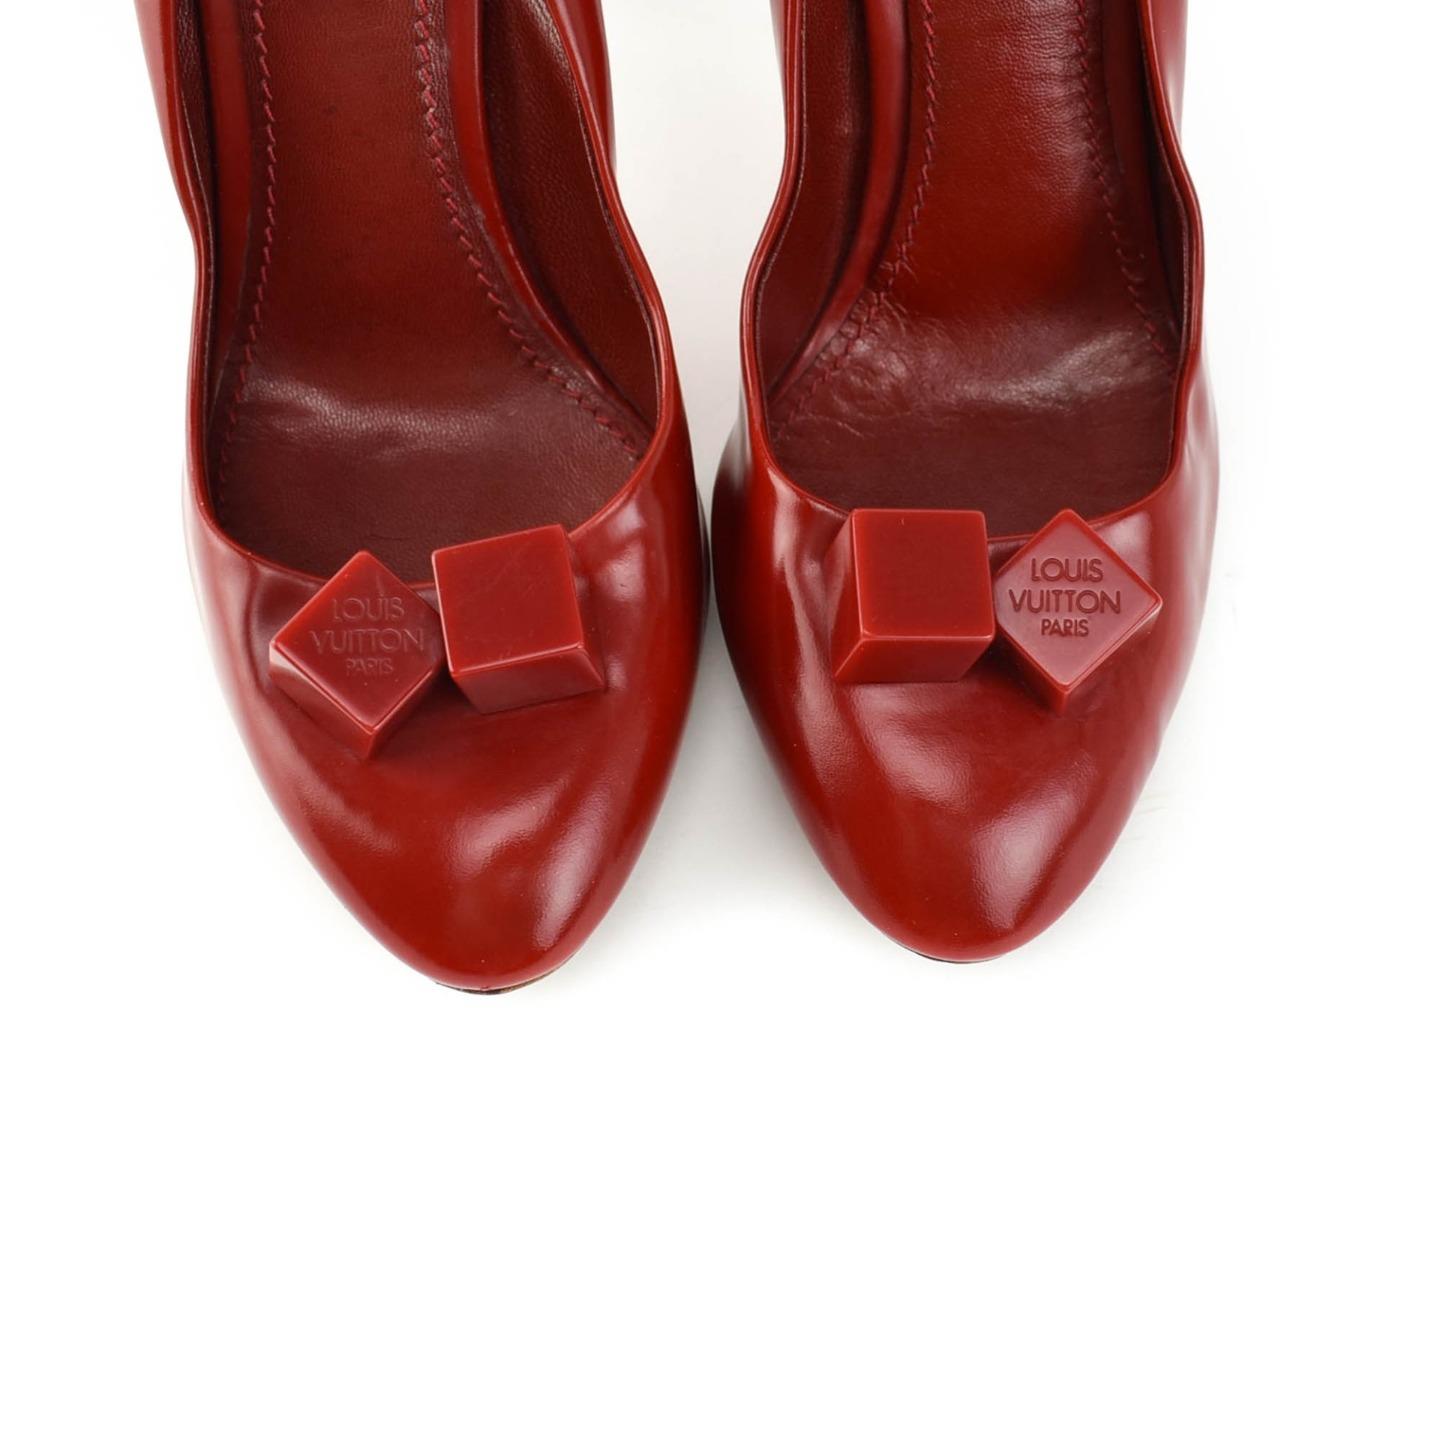 LOUIS VUITTON: Red, Leather & Logo &quot;Dice&quot; Heels/Pumps Sz: 7M | eBay